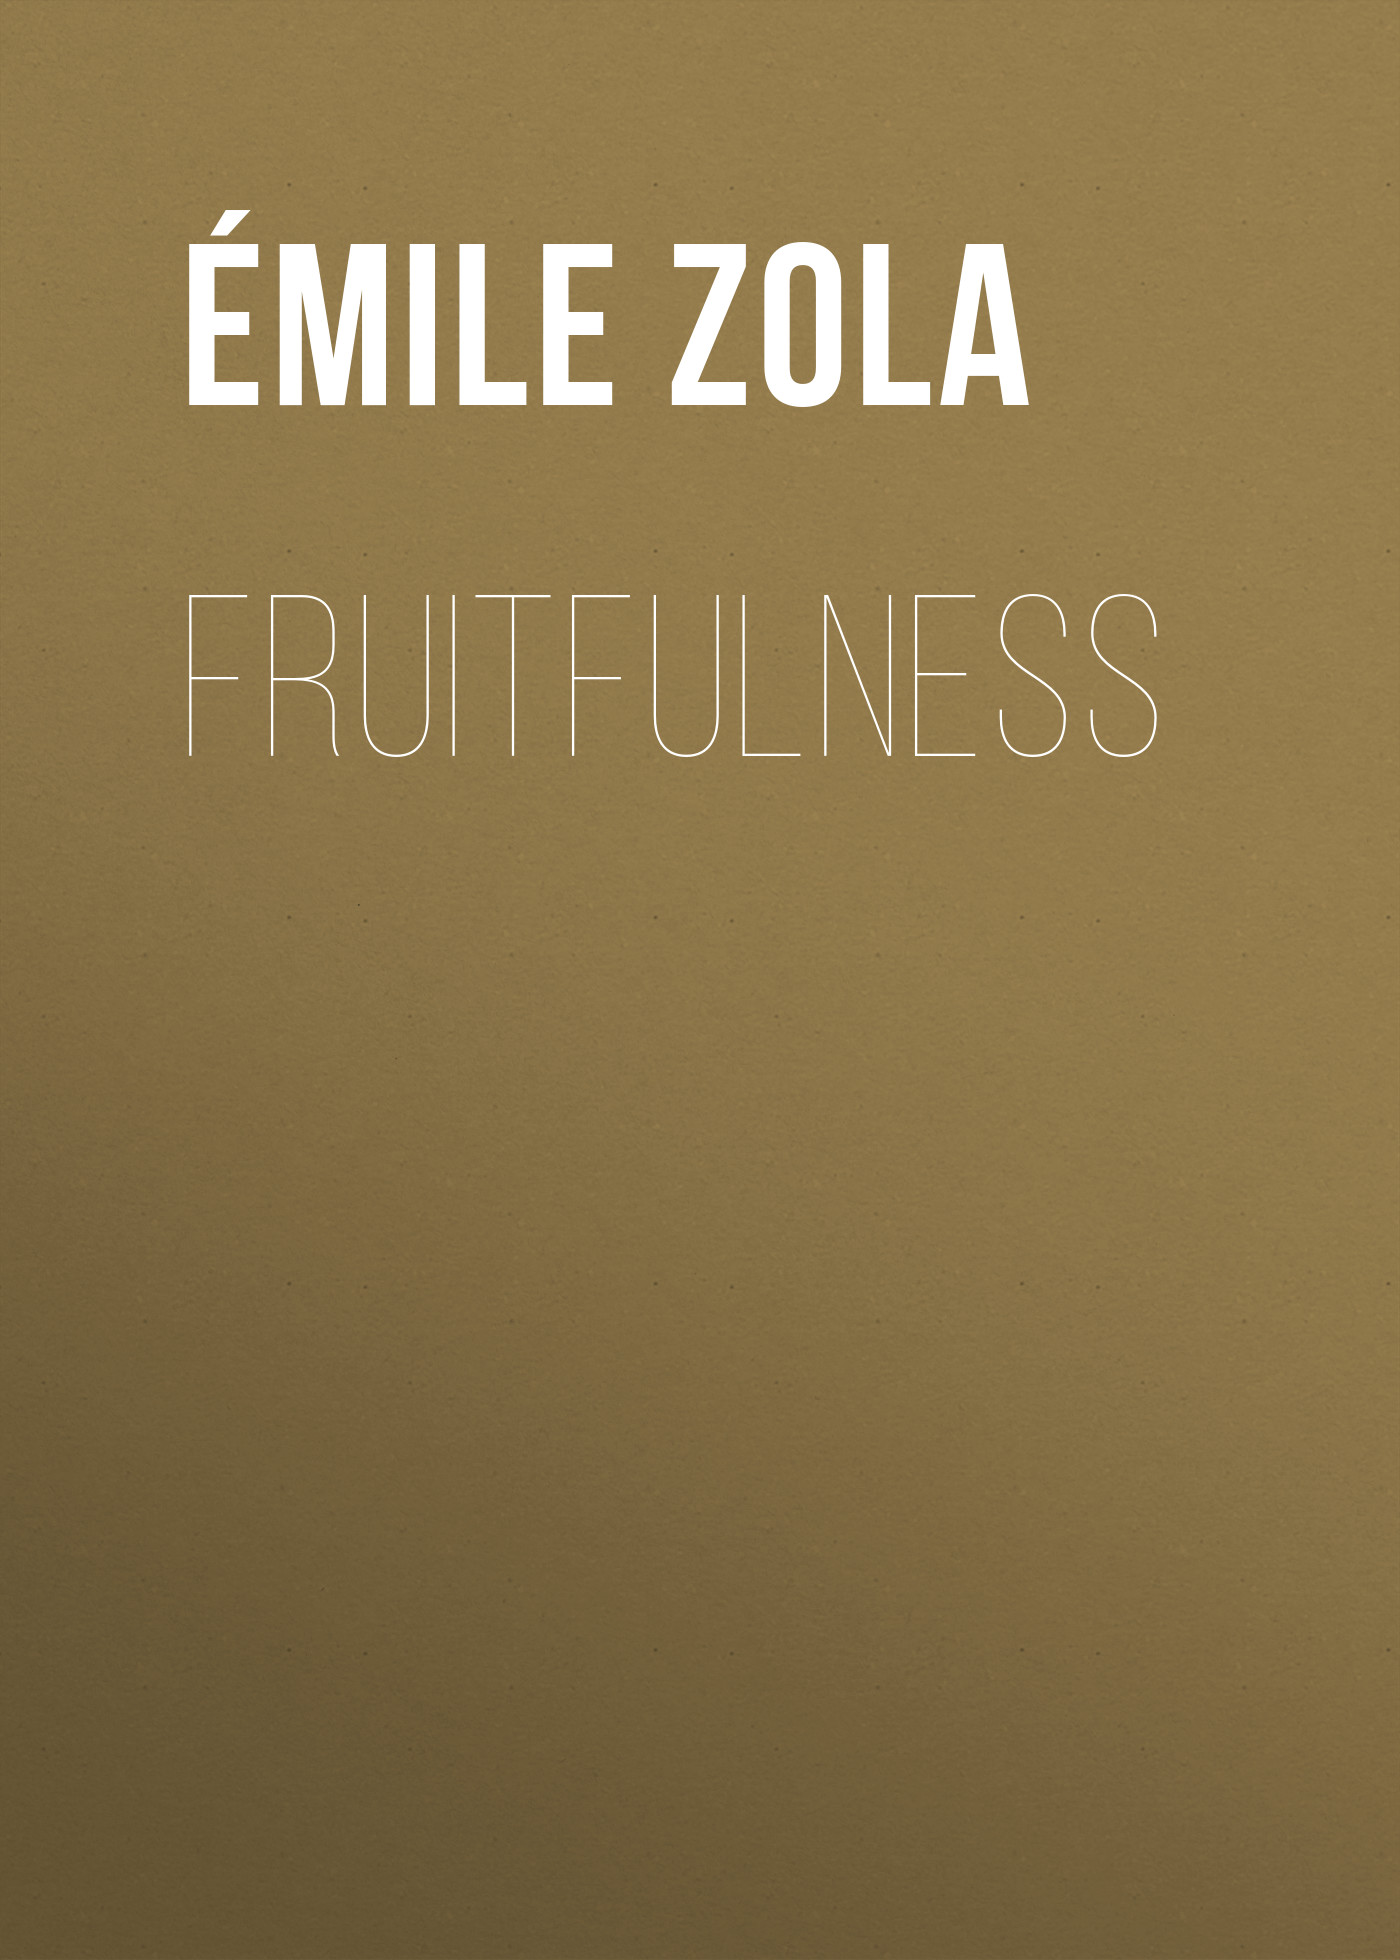 Книга Fruitfulness из серии , созданная Émile Zola, может относится к жанру Литература 19 века, Зарубежная старинная литература, Зарубежная классика. Стоимость электронной книги Fruitfulness с идентификатором 25560604 составляет 0 руб.